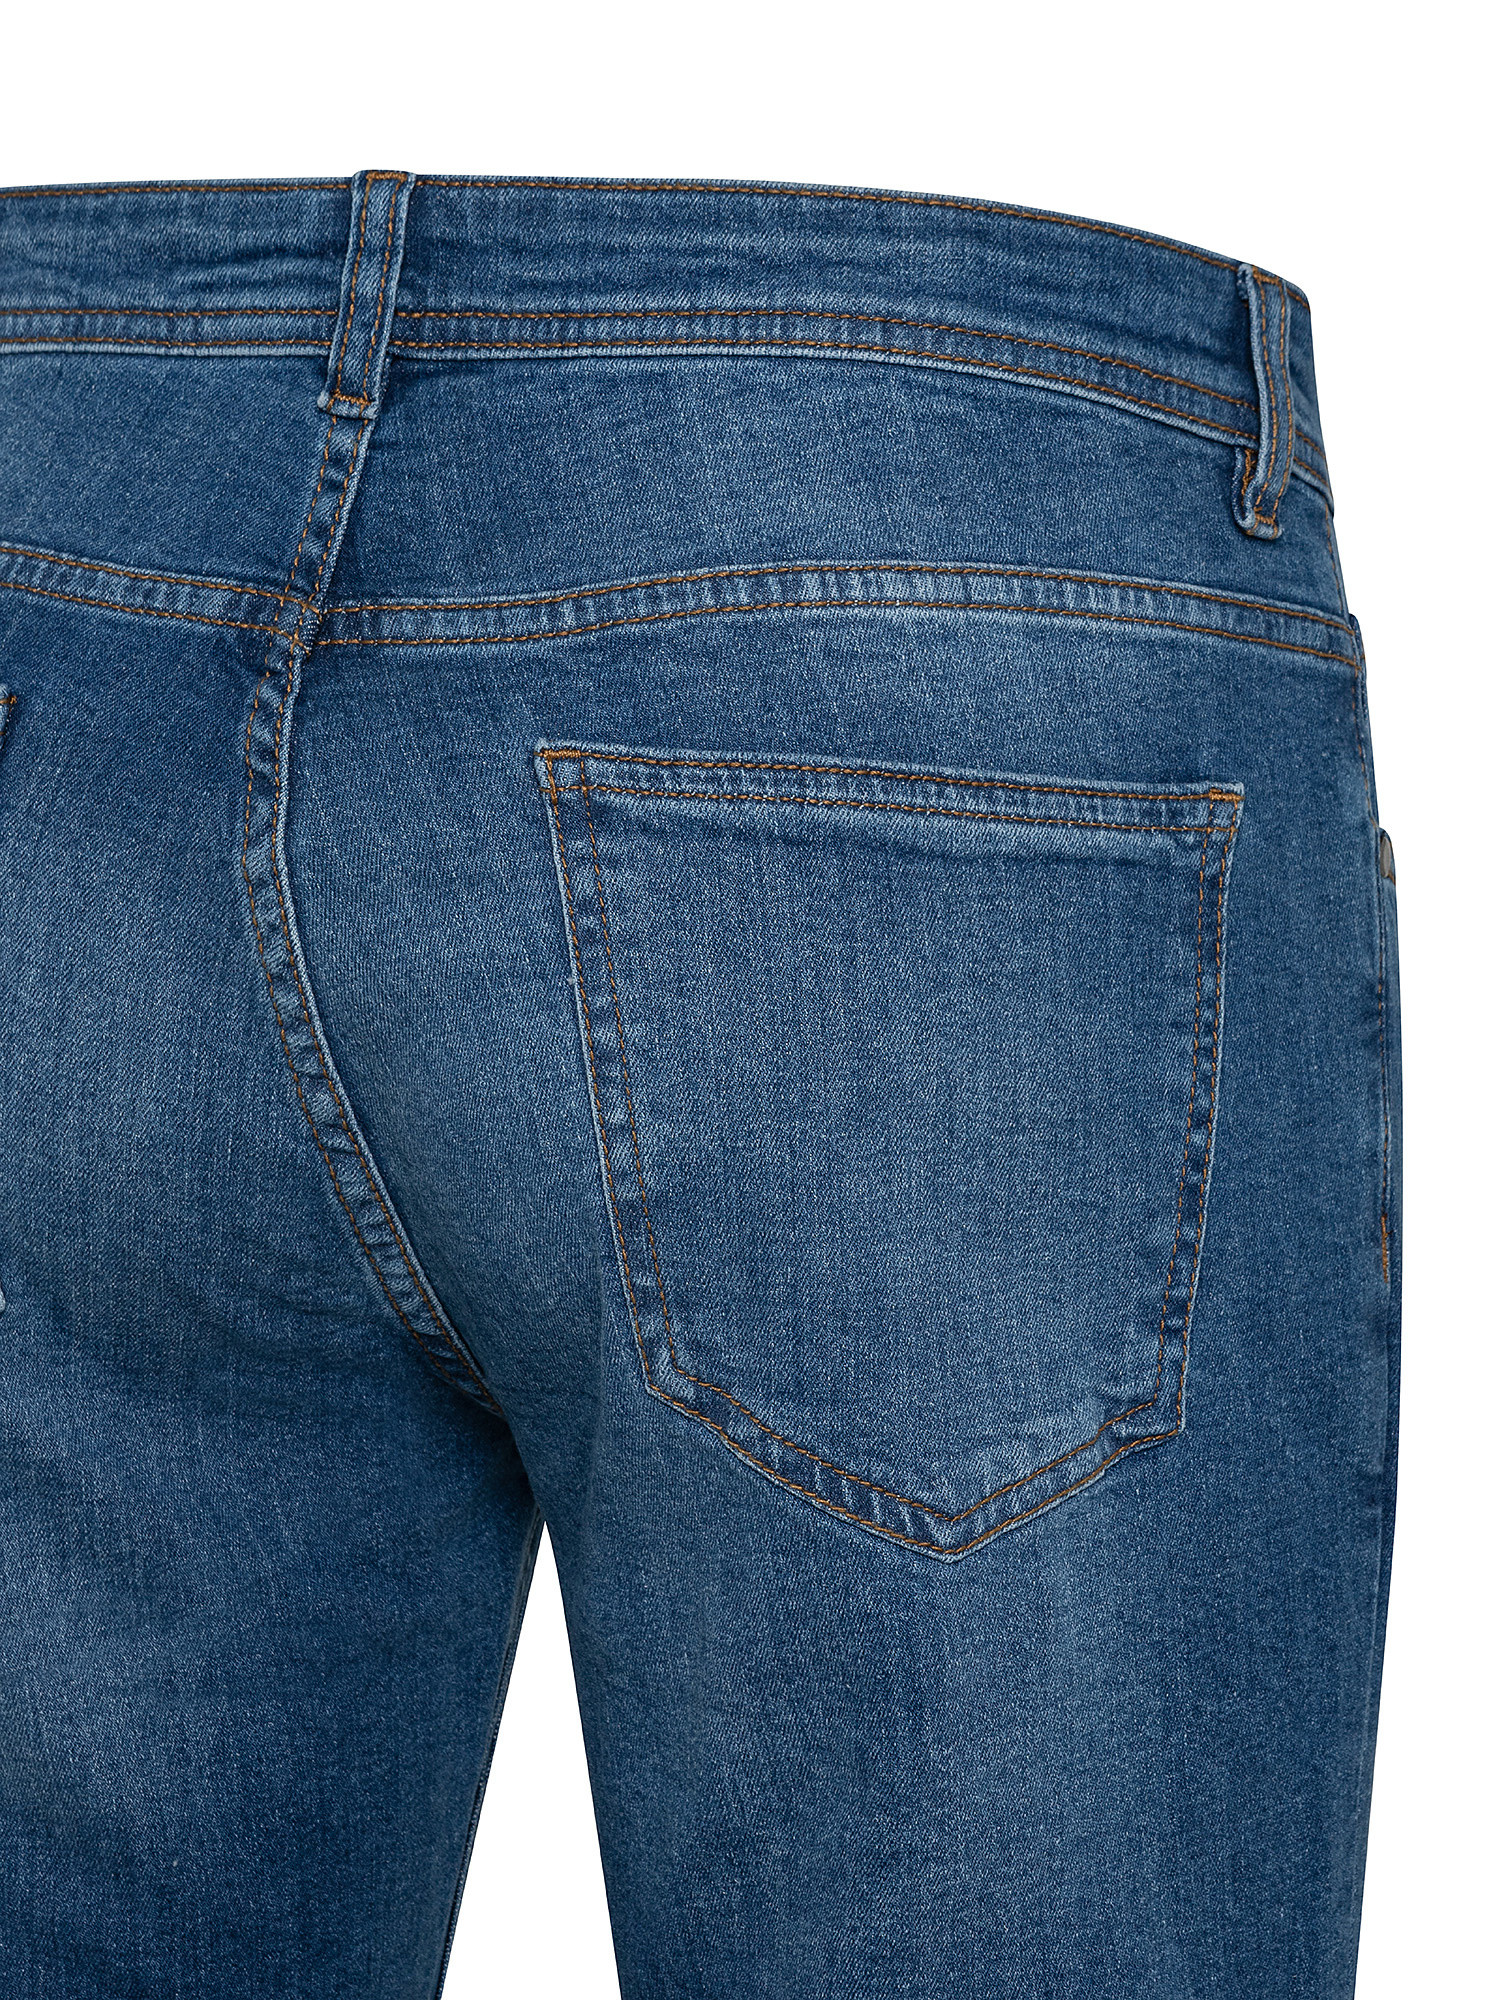 5-pocket slim stretch cotton jeans, Blue, large image number 2